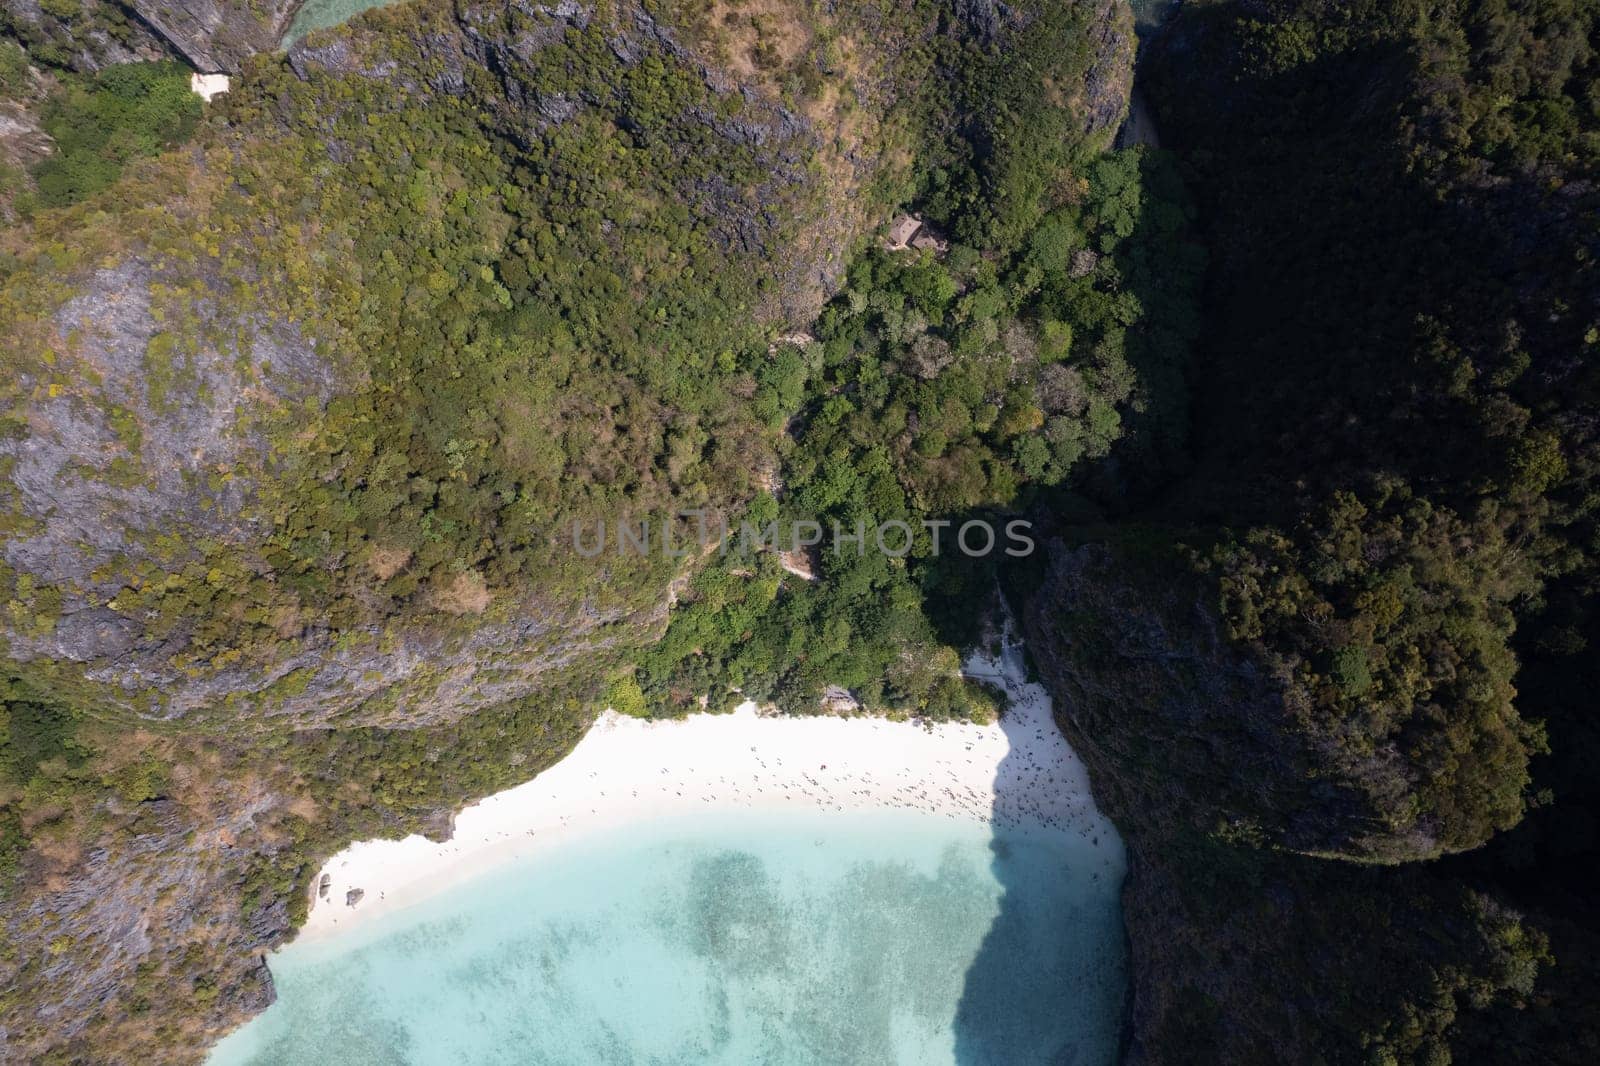 Aerial view of Maya bay beach in koh Phi Phi Leh, Krabi, Thailand by worldpitou